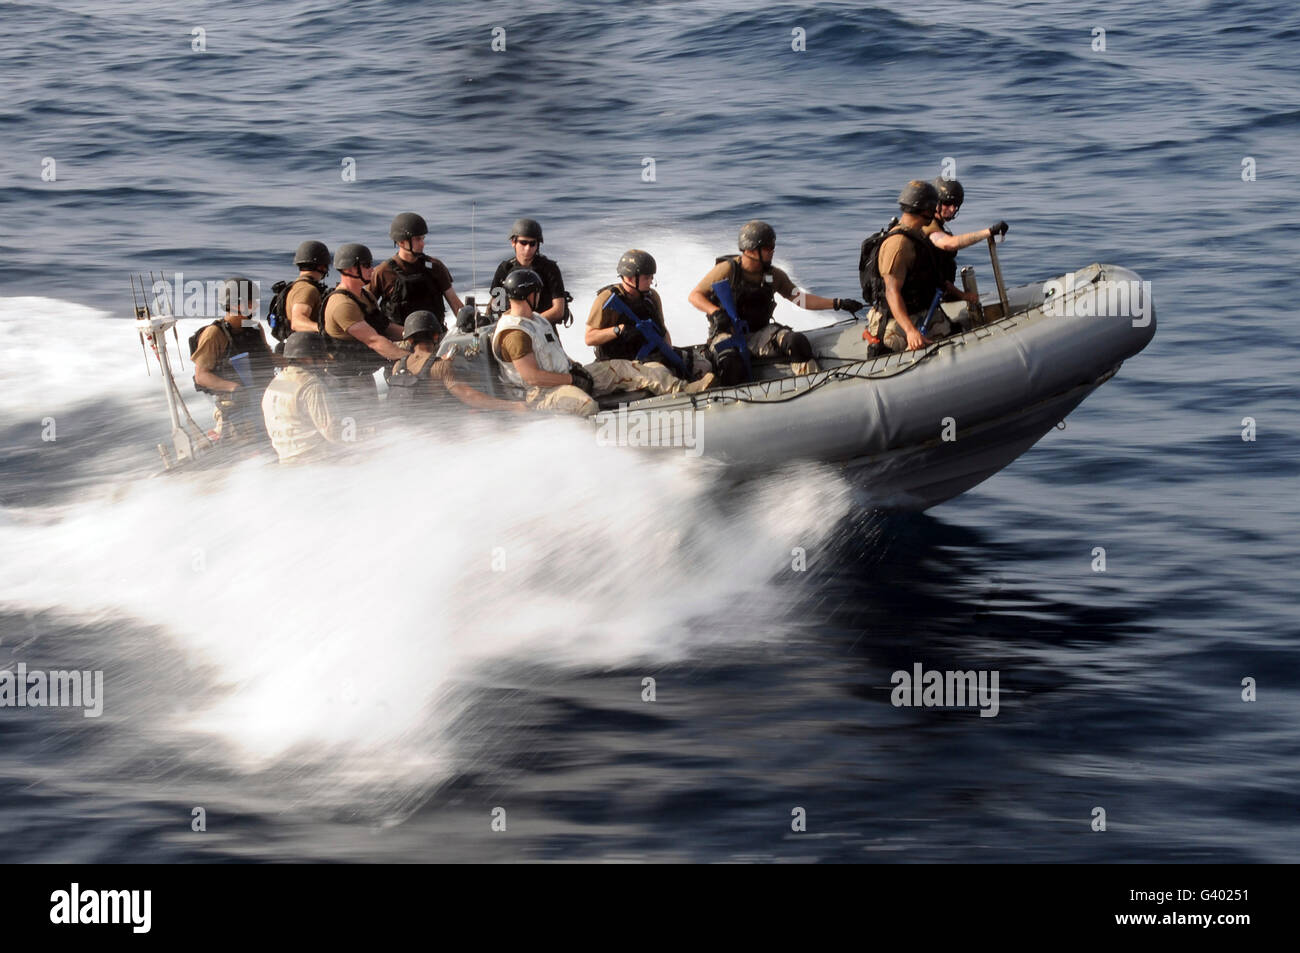 Mitglieder eines Besuchs, Board, Durchsuchung und Beschlagnahme in einem Festrumpf Schlauchboot manövrieren. Stockfoto